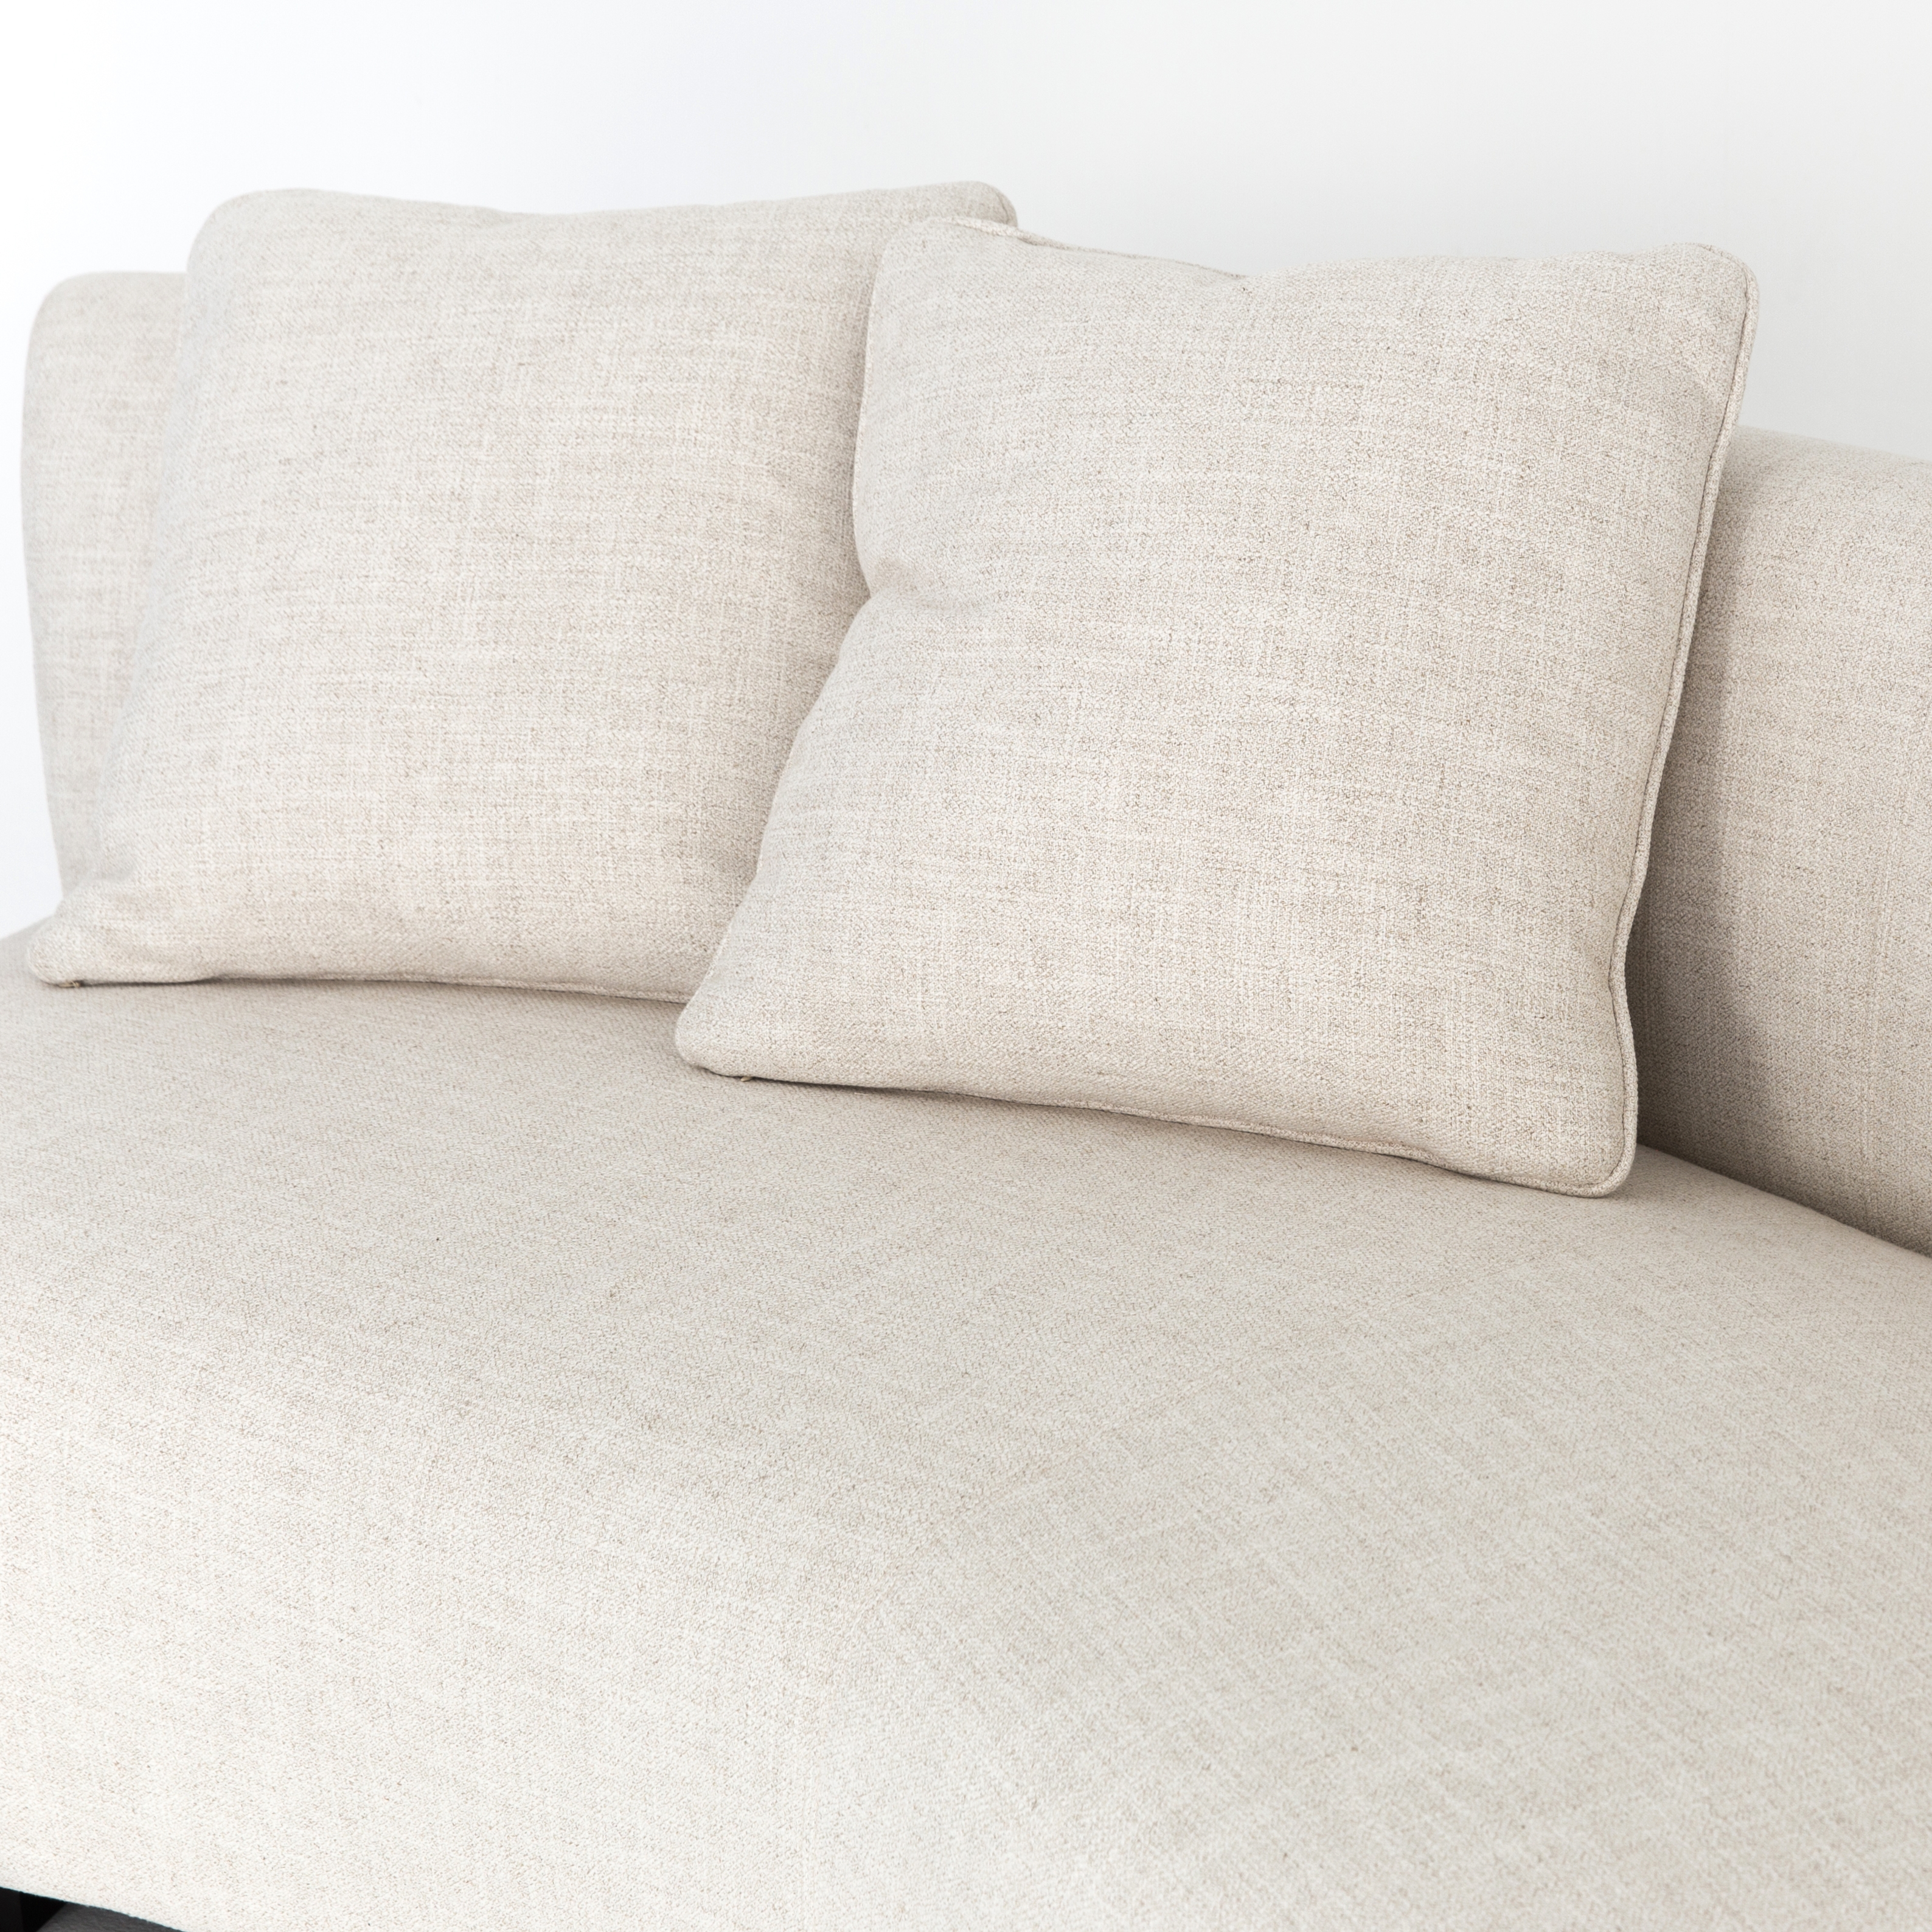 Saban 2-Piece Curved Sectional Sofa - Image 5